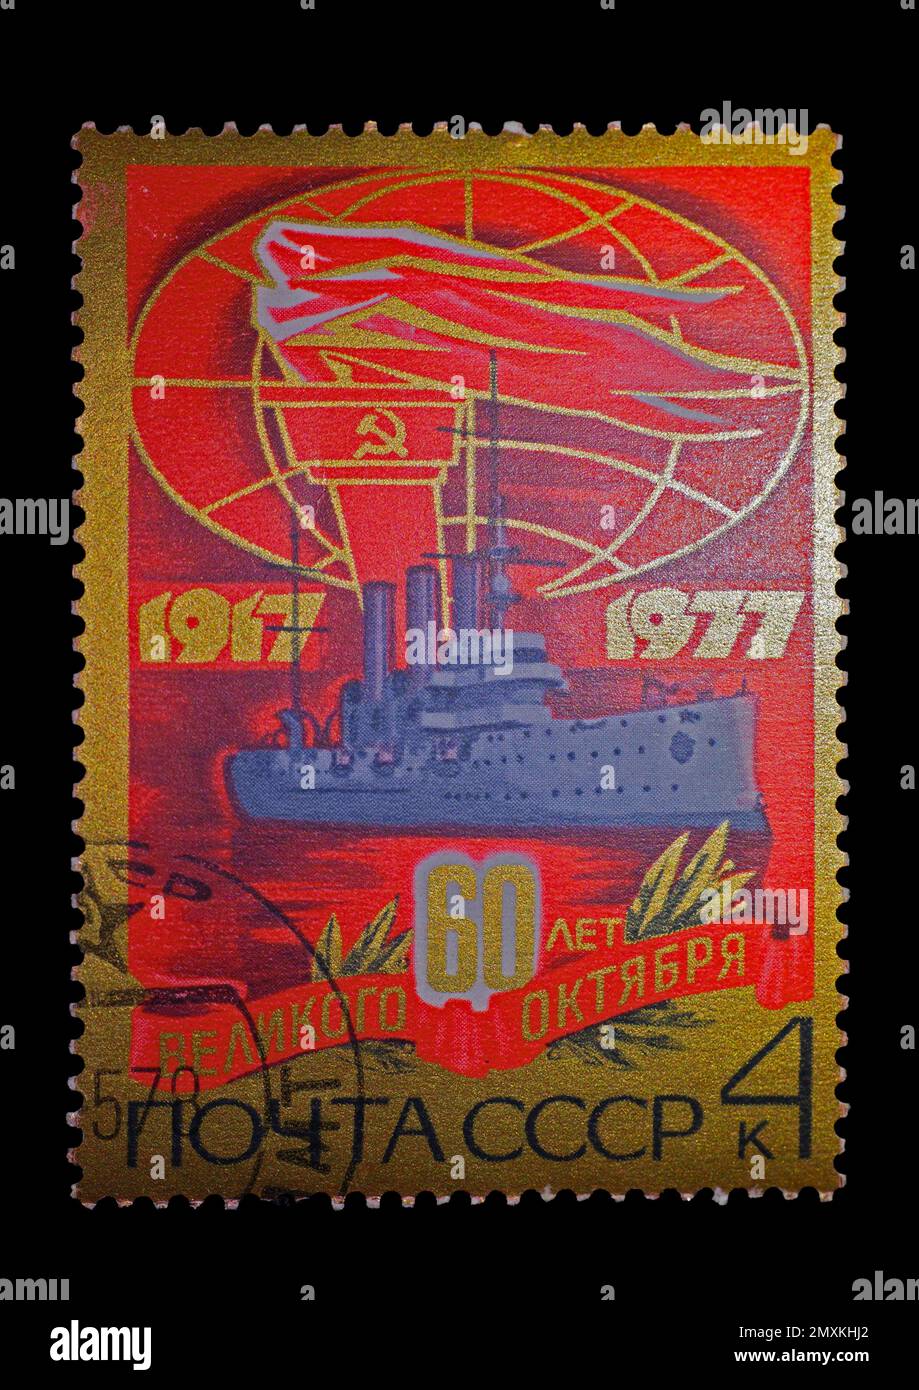 Timbre russe pour le 60th anniversaire de la révolution d'octobre, 1917 à 1977 Banque D'Images